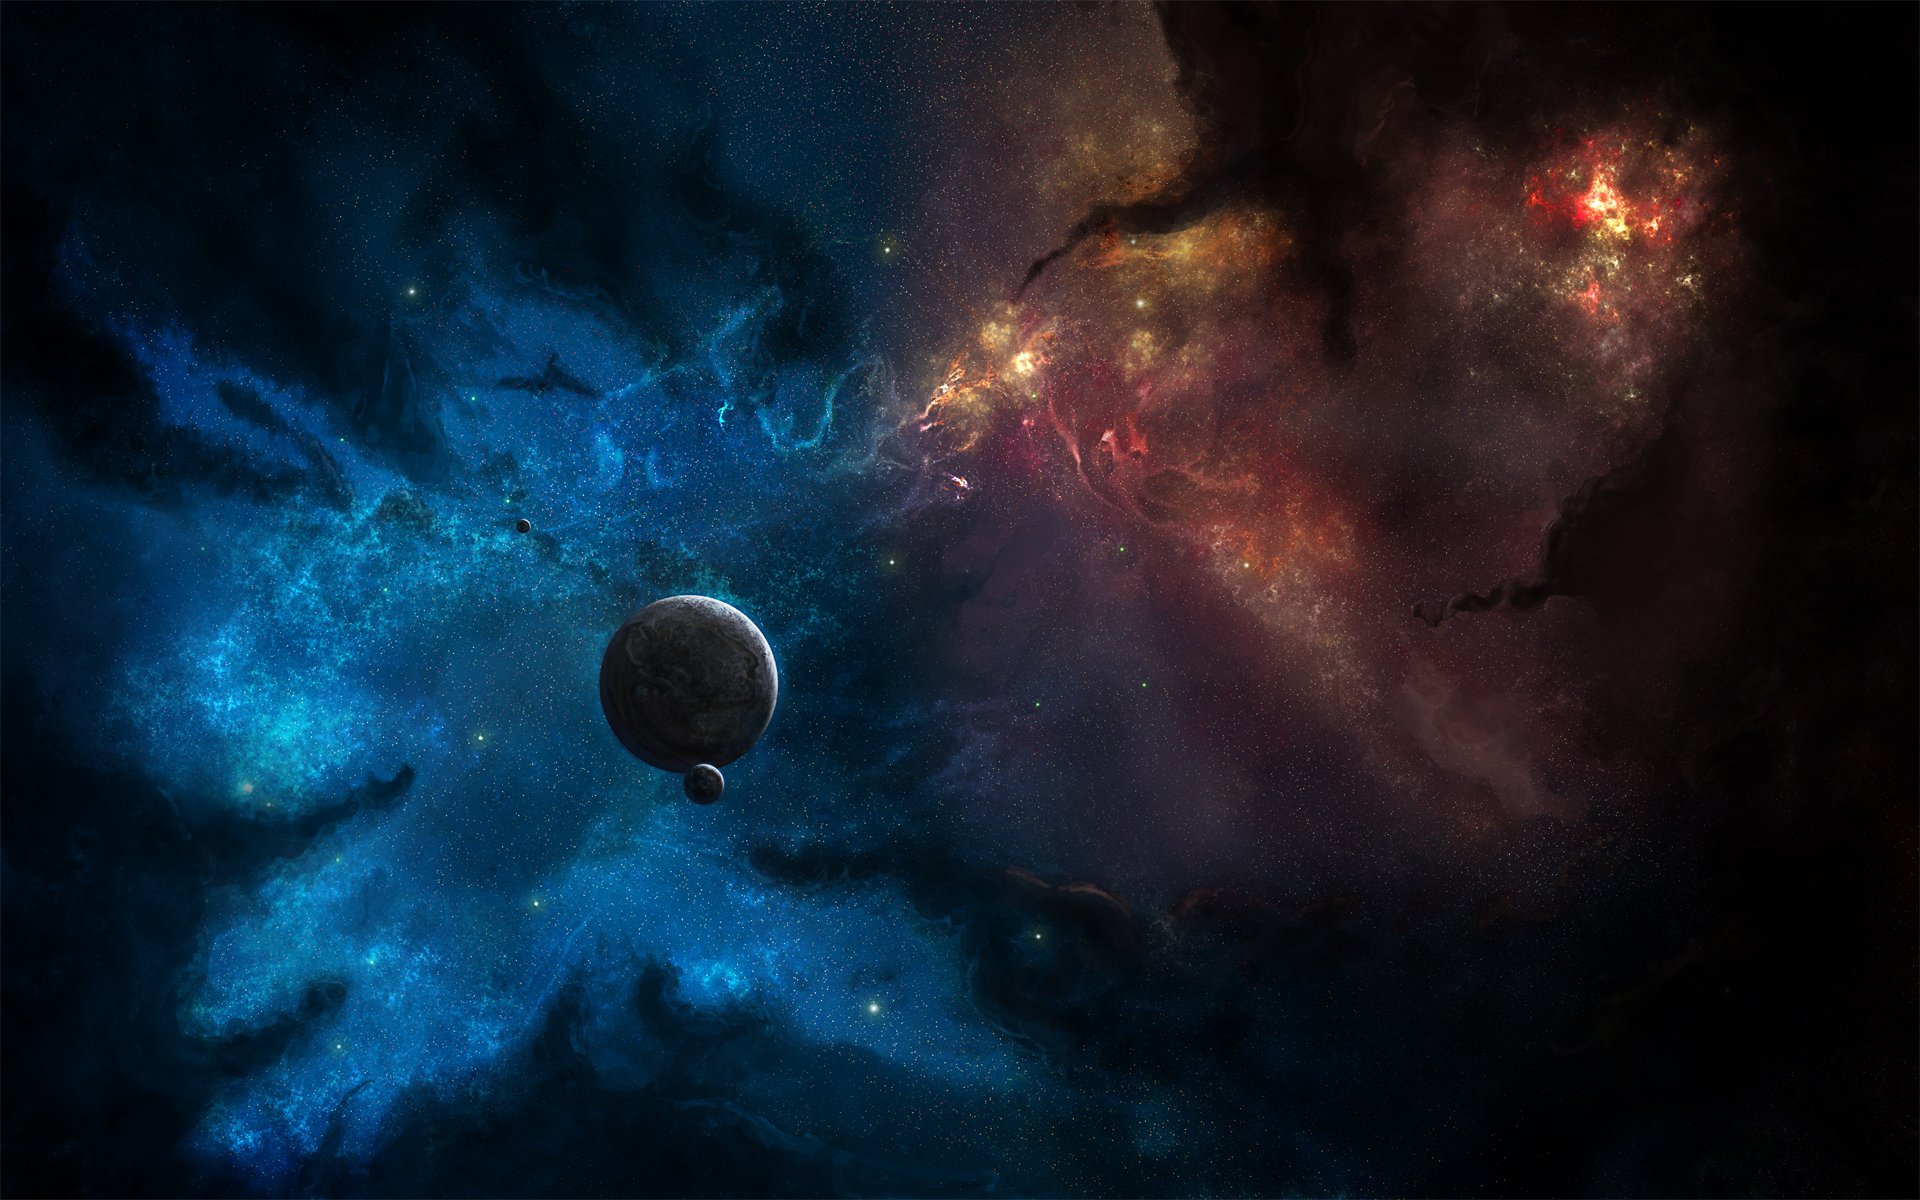 арт космос туманность звезды планета спутник